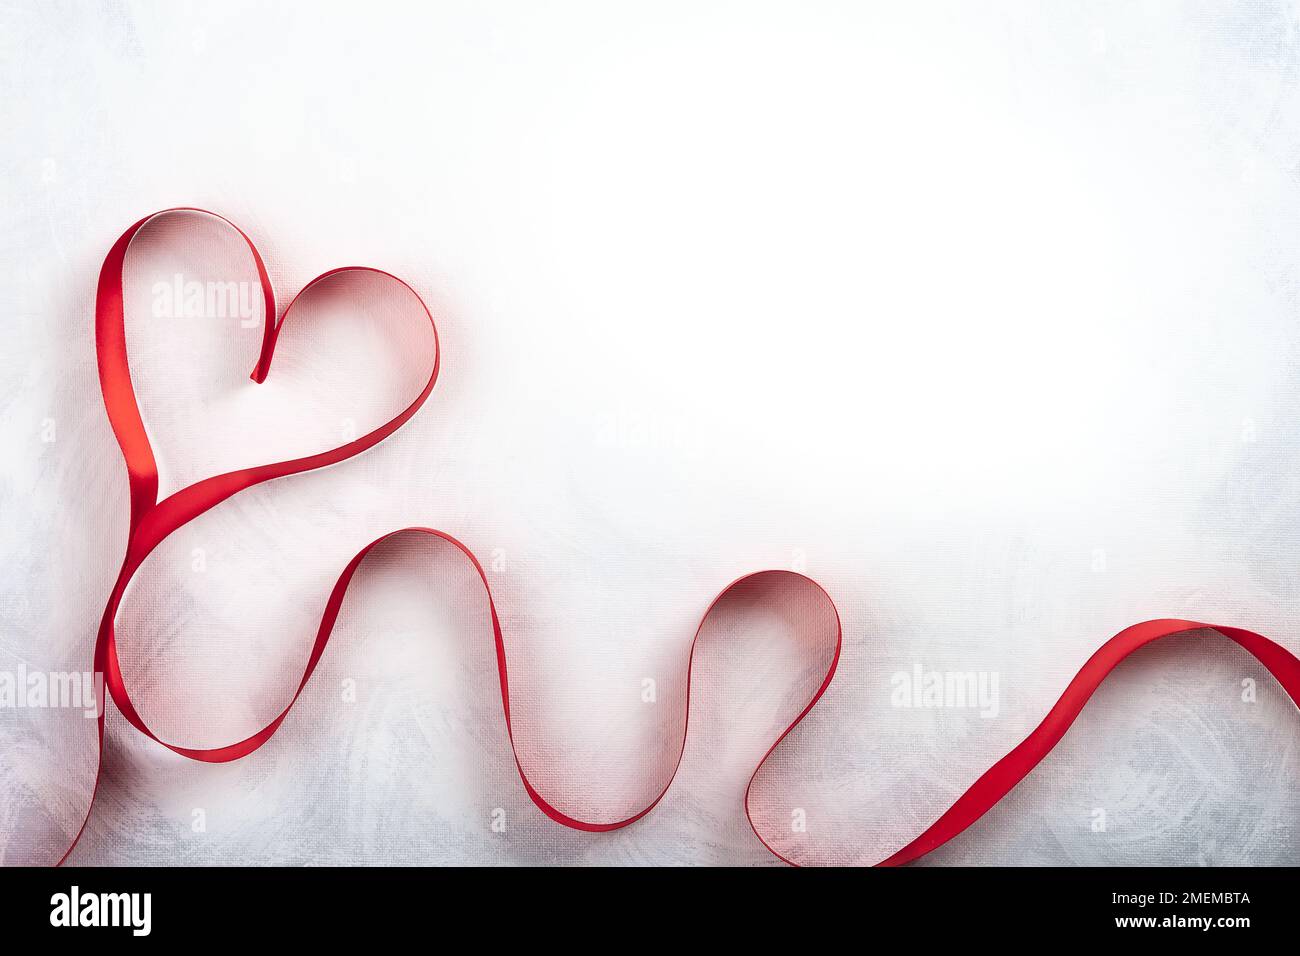 Rotes Band in Herzform auf klassischem weiß-grauen Hintergrund. Festliches Konzept für den Valentinstag. Draufsicht mit Kopierbereich. Stockfoto